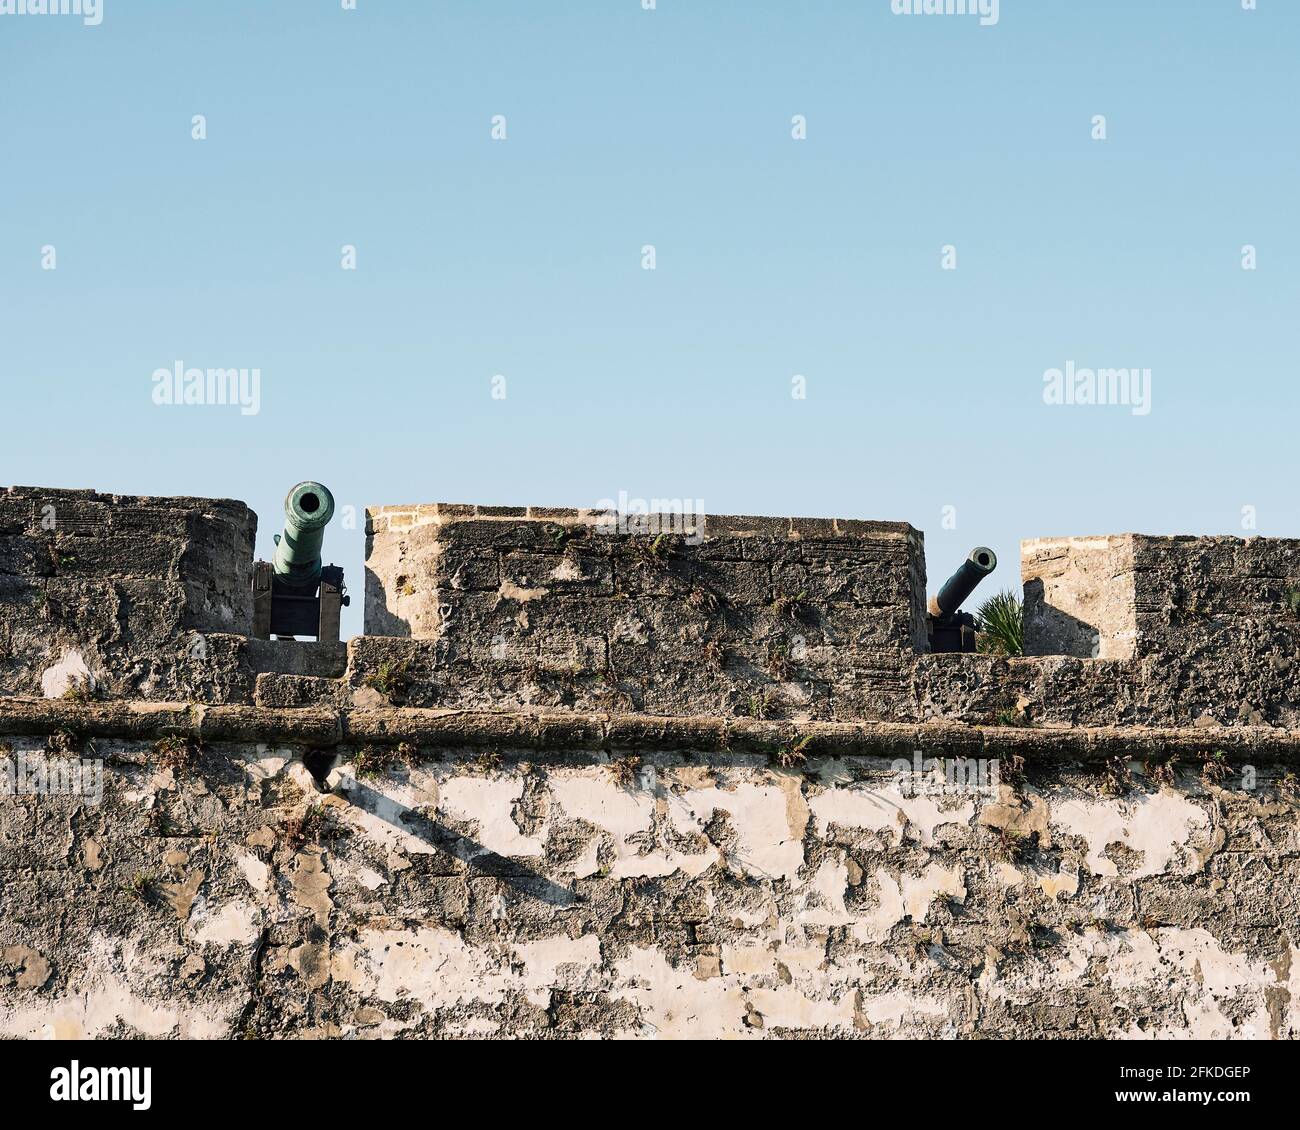 Kanonen, die an einer Steinmauer des Castillo de San Marcos ausgestellt sind, einer spanischen Festung oder Festung aus dem 17. Jahrhundert in St. Augustine, Florida, USA. Stockfoto